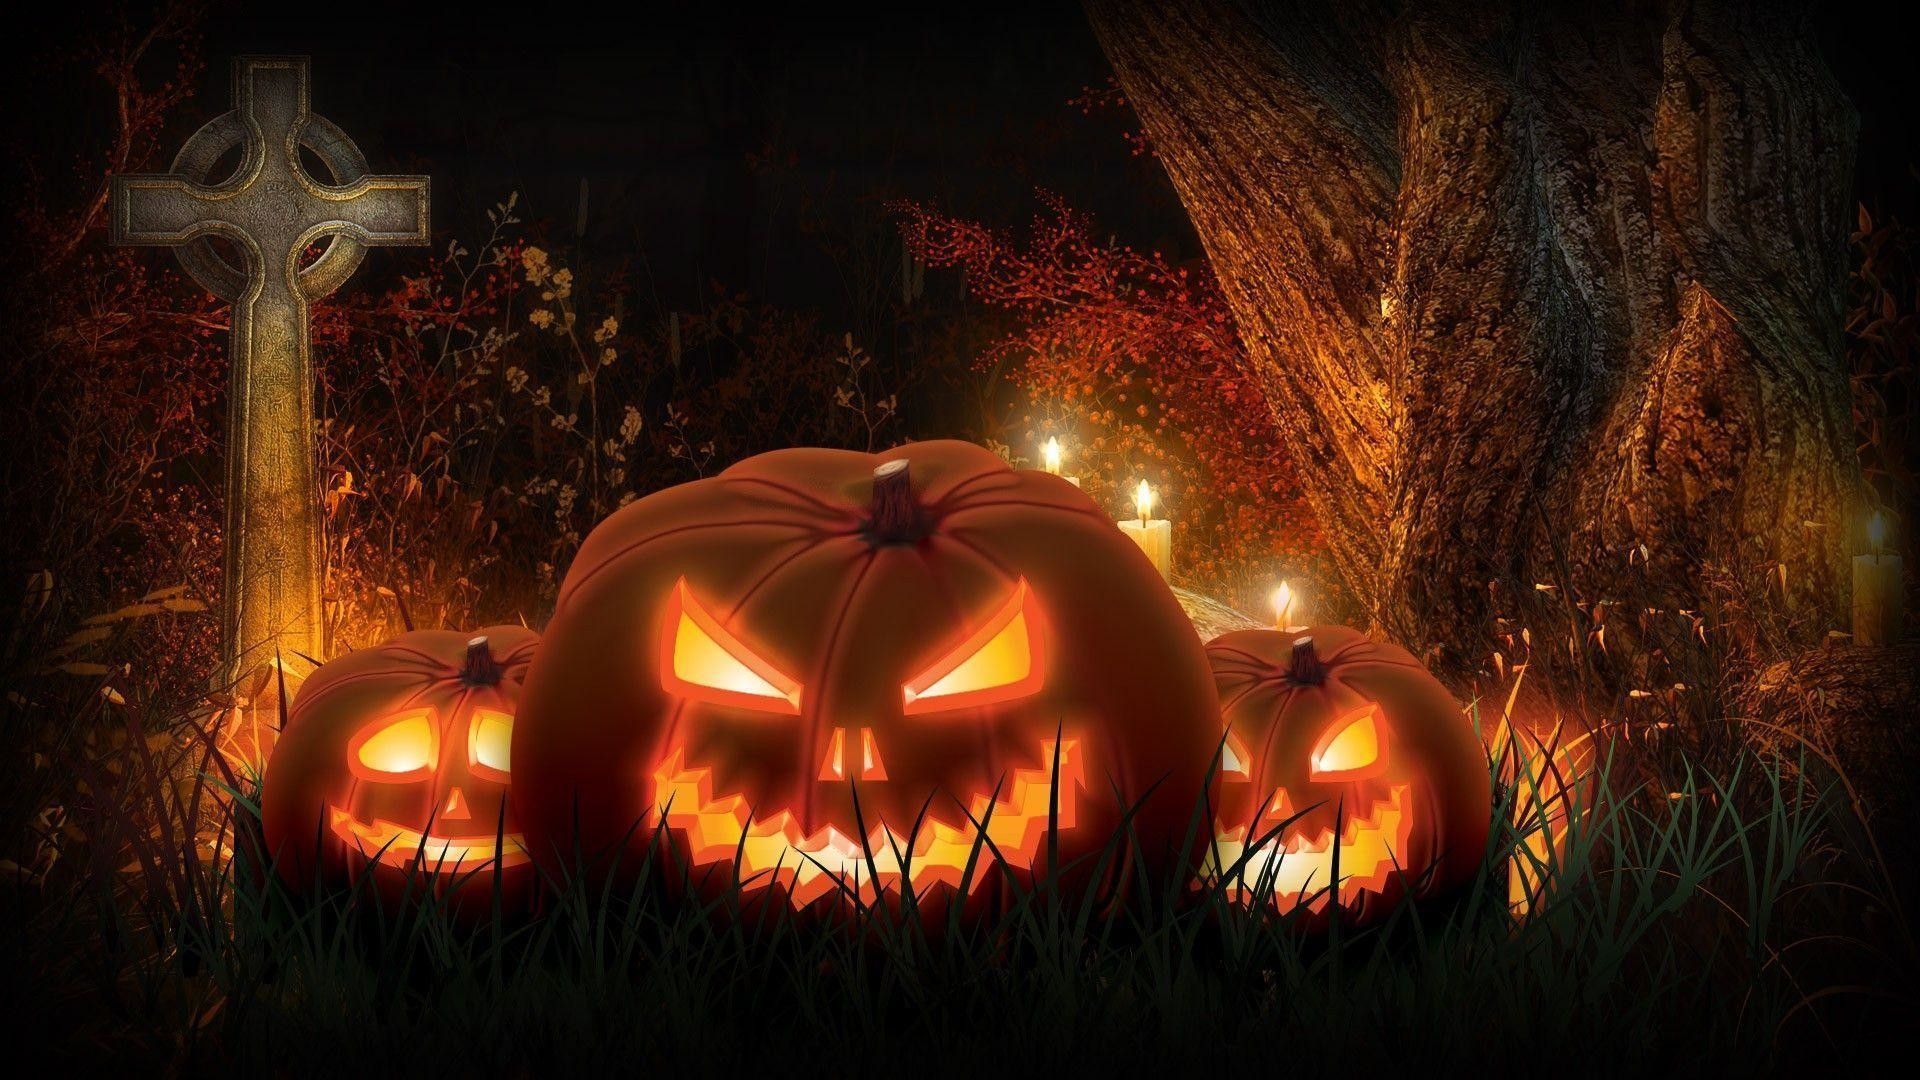 Scary Halloween Pumpkin Wallpaper 1080p. Fondos de halloween, Calabaza de miedo, Halloween aterrador